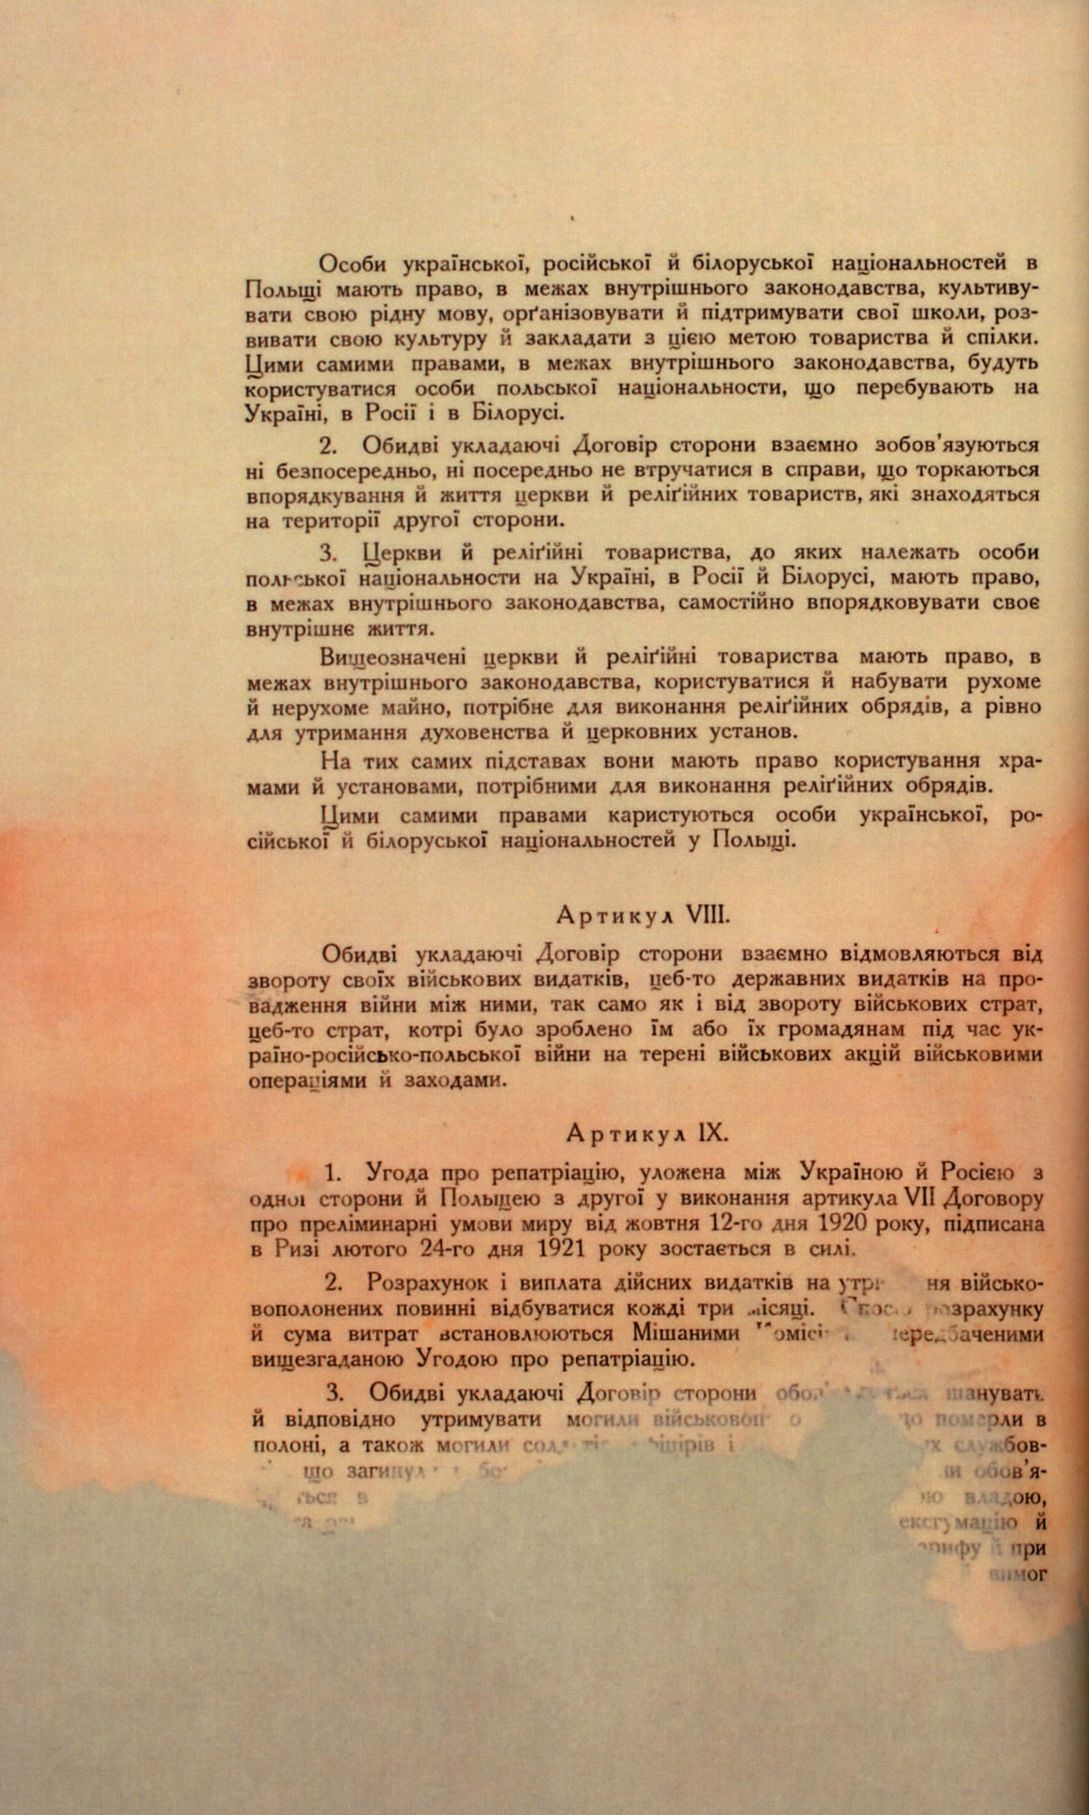 Traktat Pokoju między Polską a Rosją i Ukrainą podpisany w Rydze dnia 18 marca 1921 roku, s. 42, MSZ, sygn. 6739.